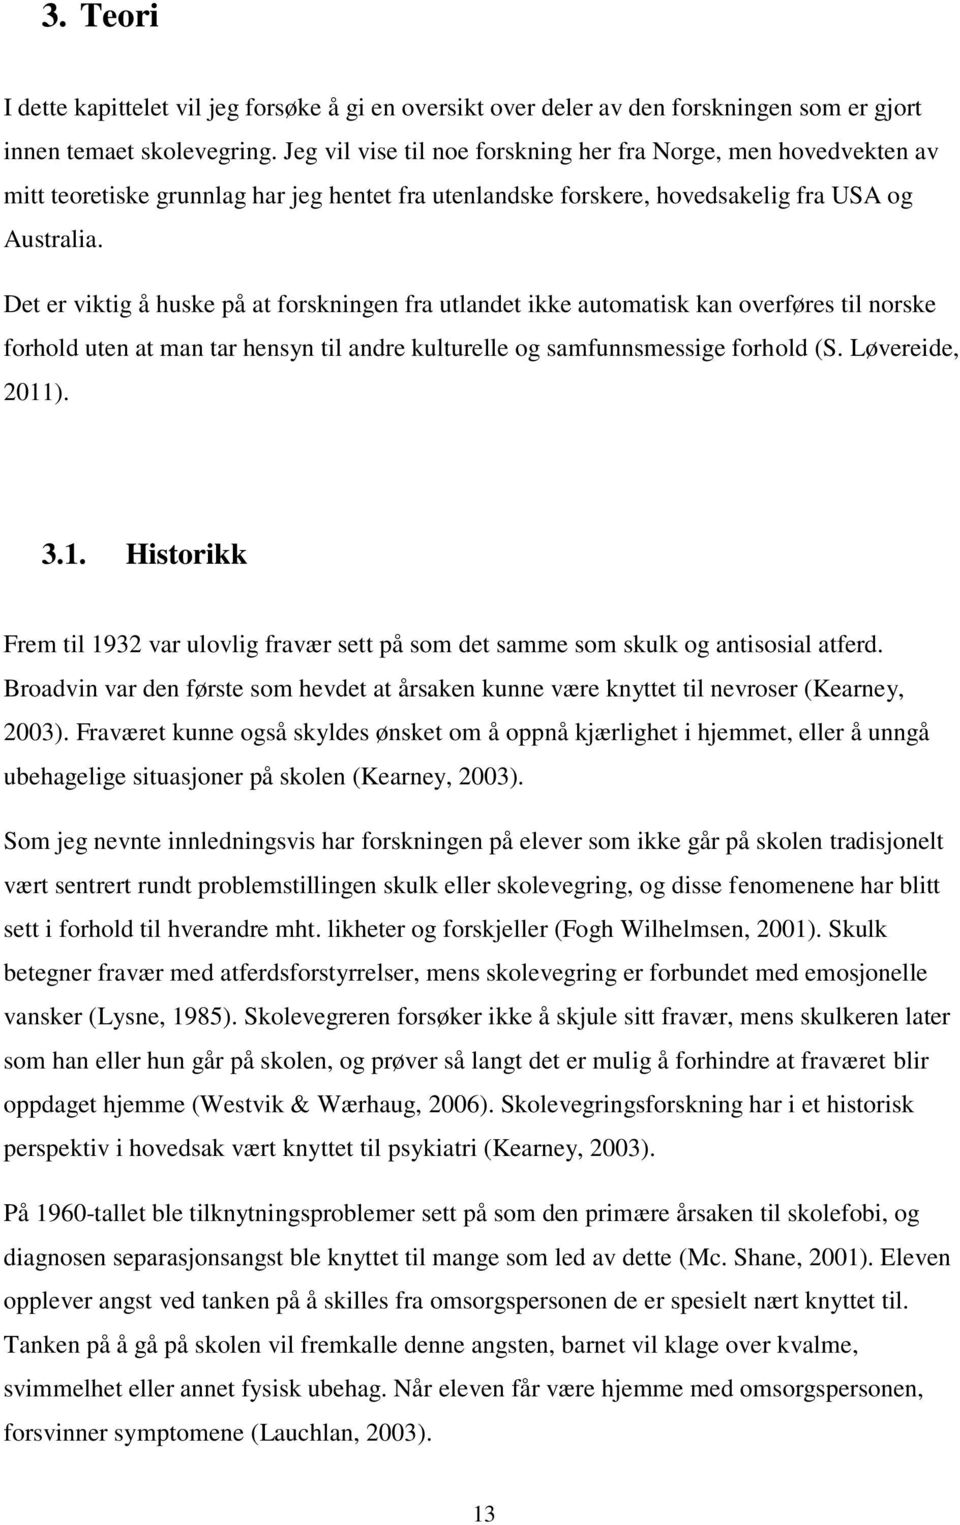 Det er viktig å huske på at forskningen fra utlandet ikke automatisk kan overføres til norske forhold uten at man tar hensyn til andre kulturelle og samfunnsmessige forhold (S. Løvereide, 2011